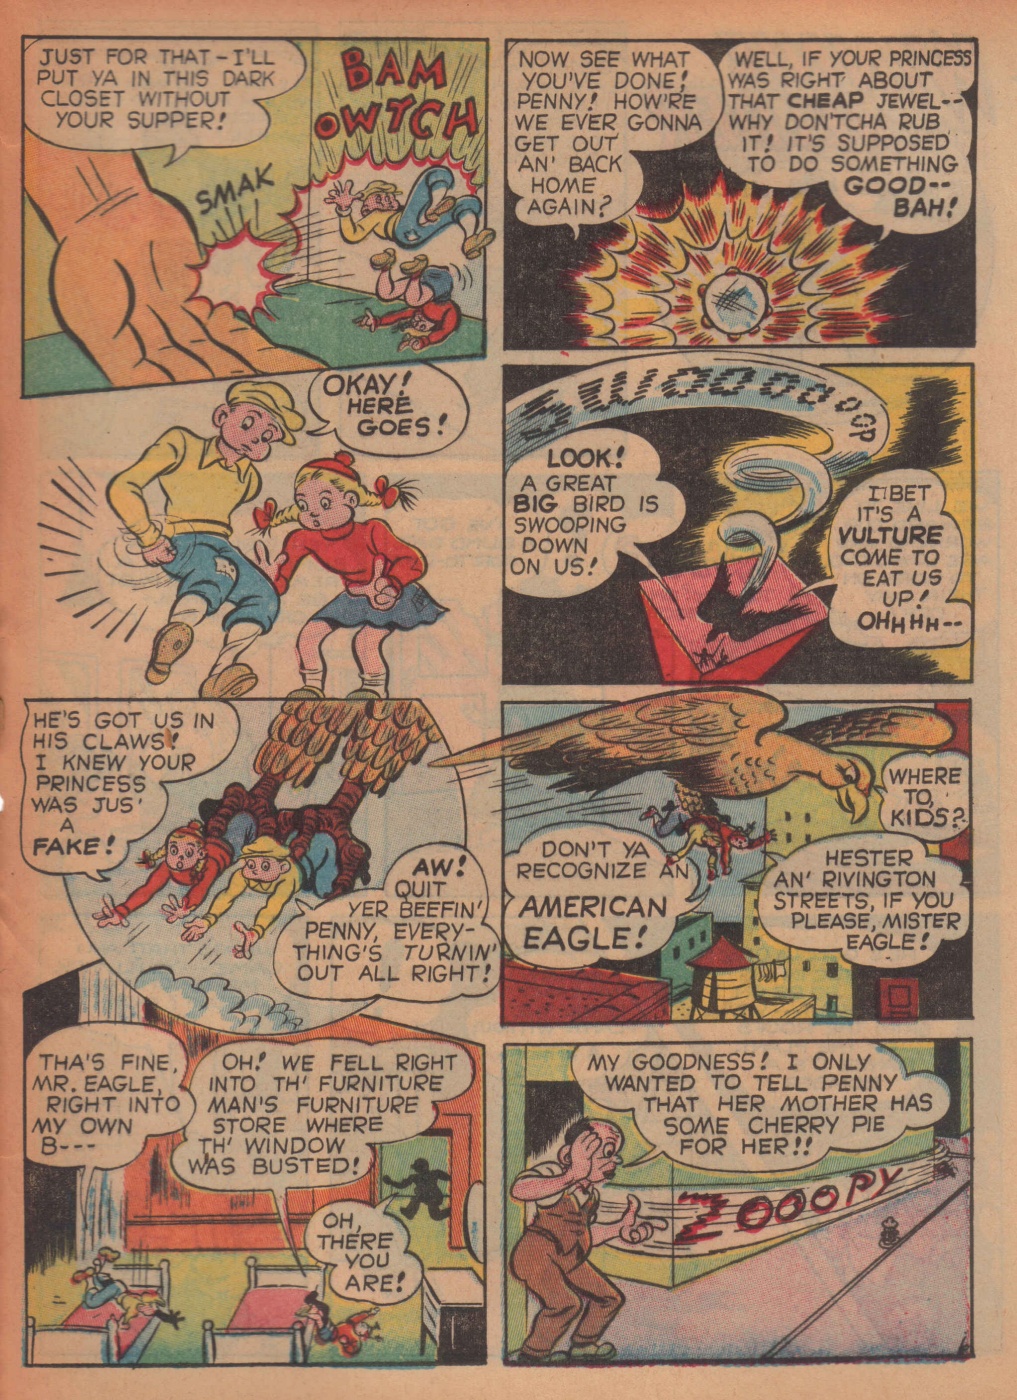 Super Dooper Funny Comics (29)